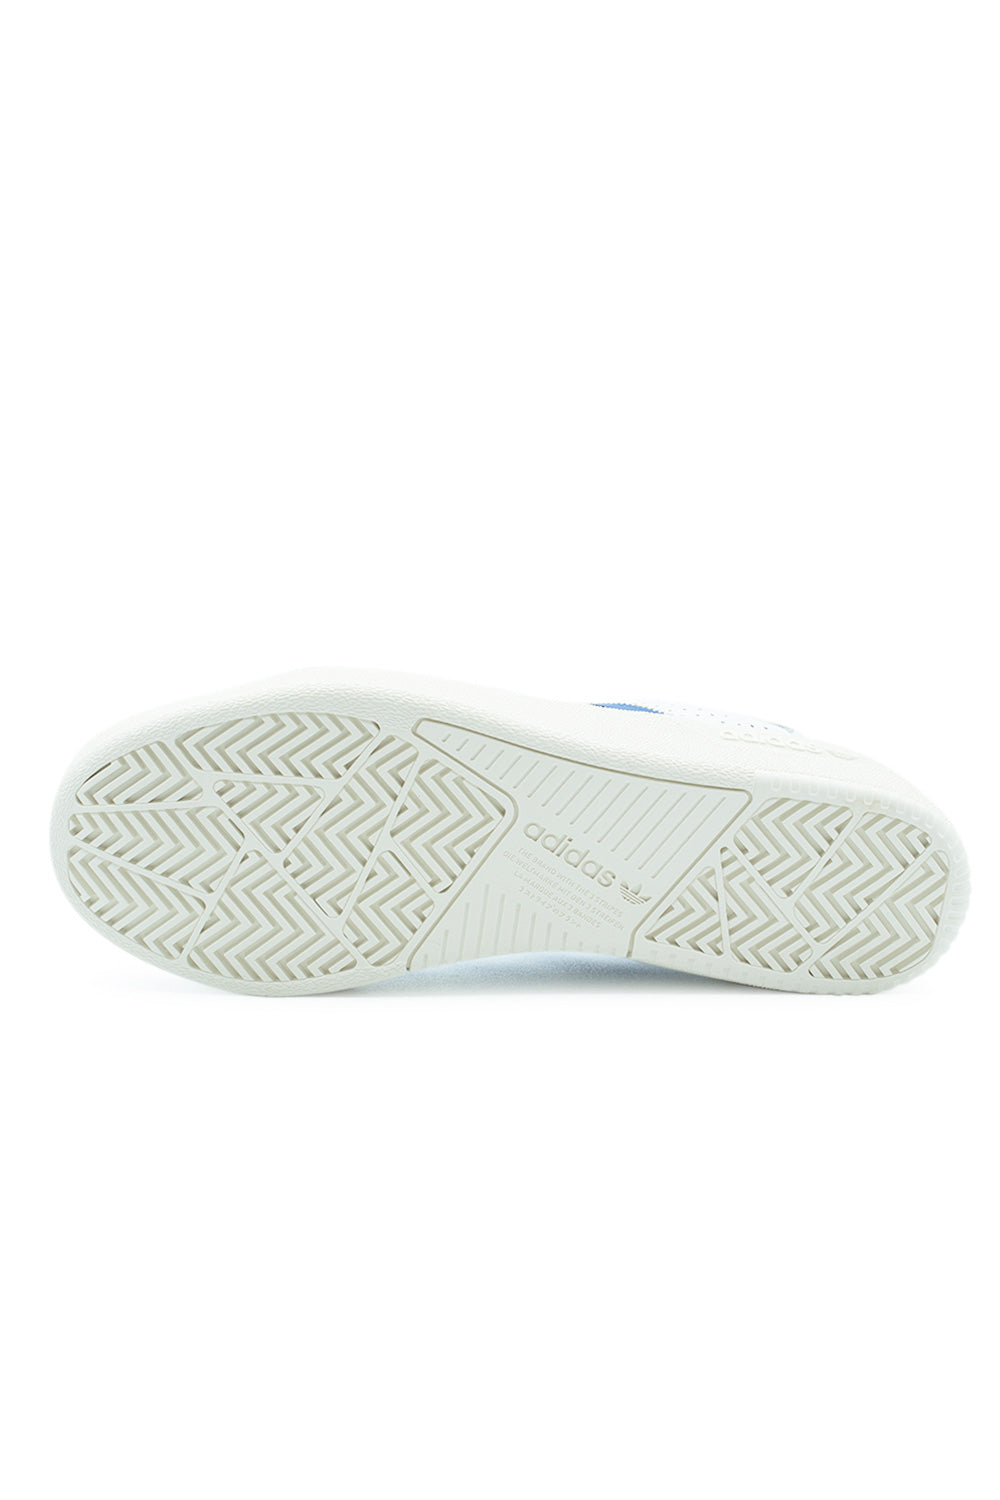 Adidas Tyshawn Low Shoe Cloud White / Royal Blue / Chalk White - BONKERS